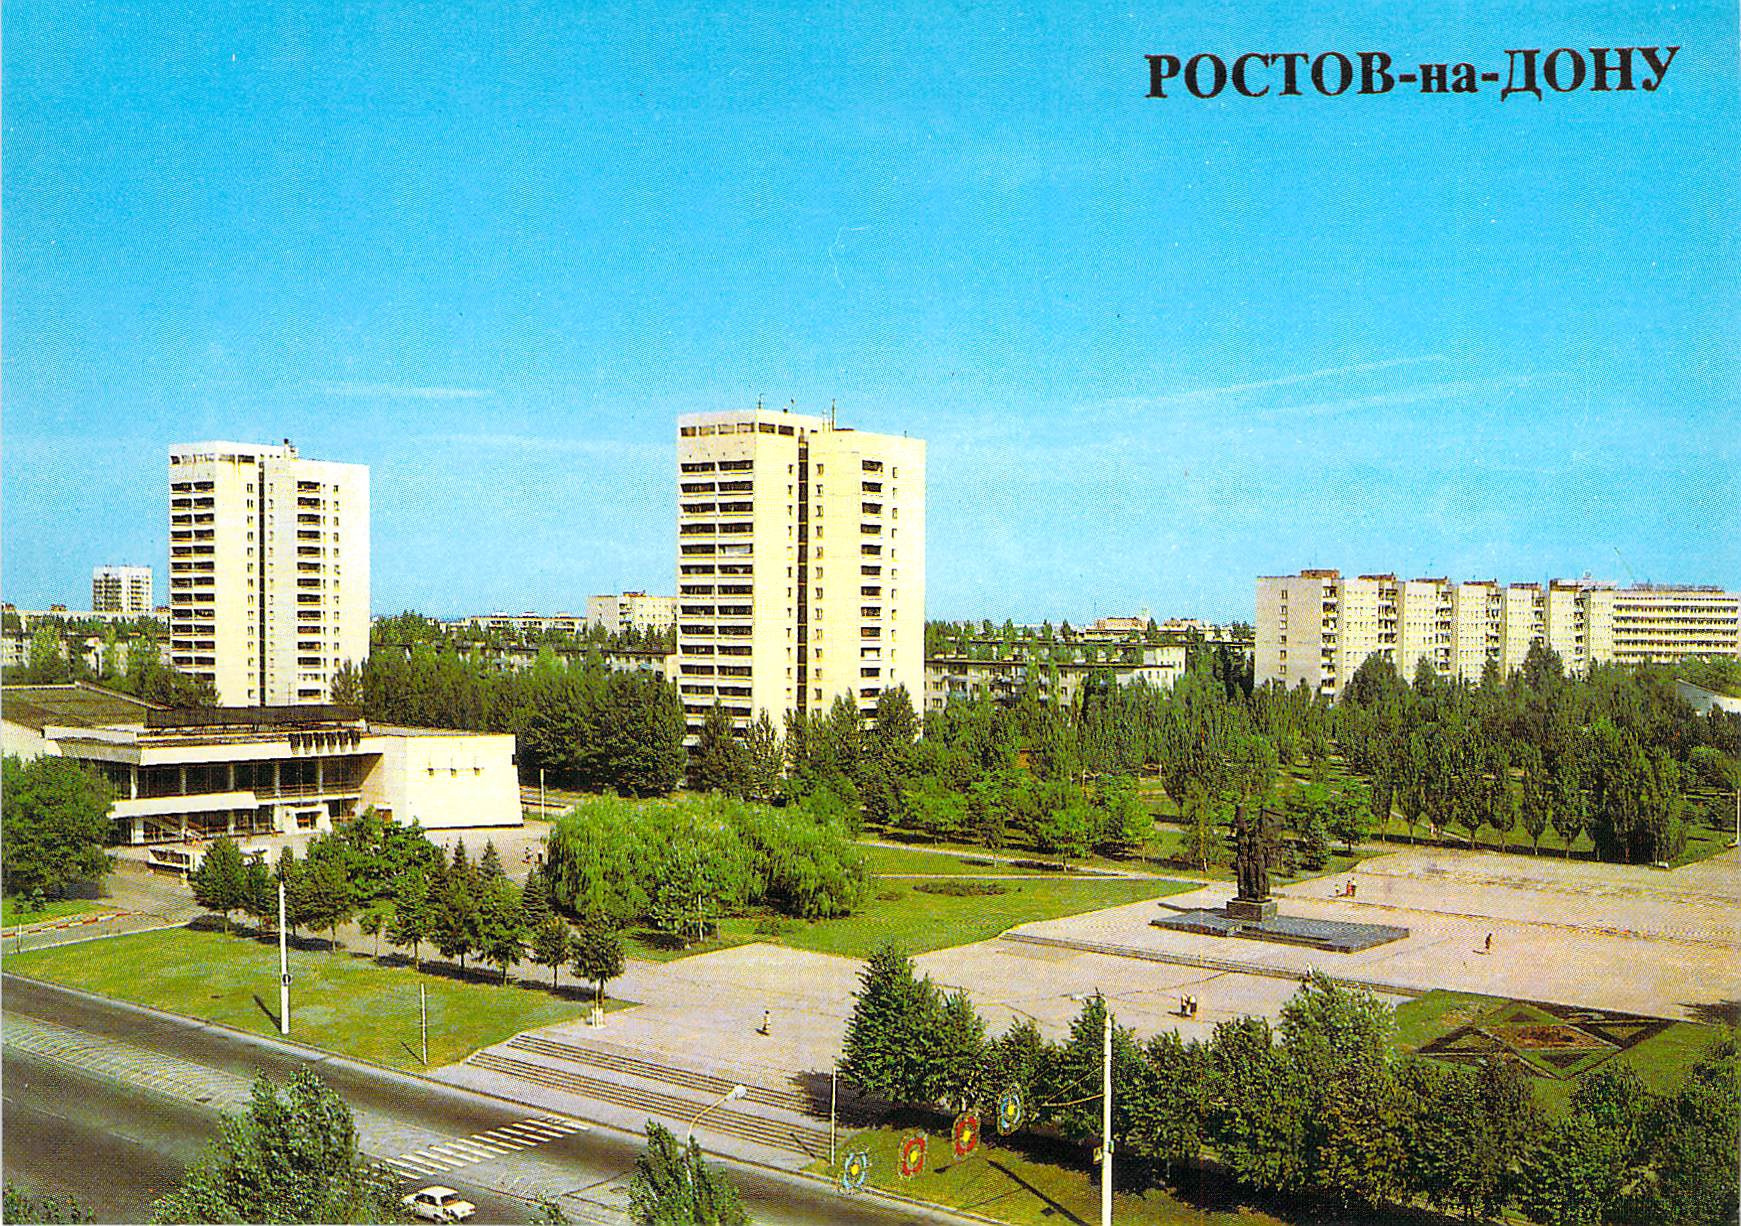 Ростов на Дону Западный 80-е